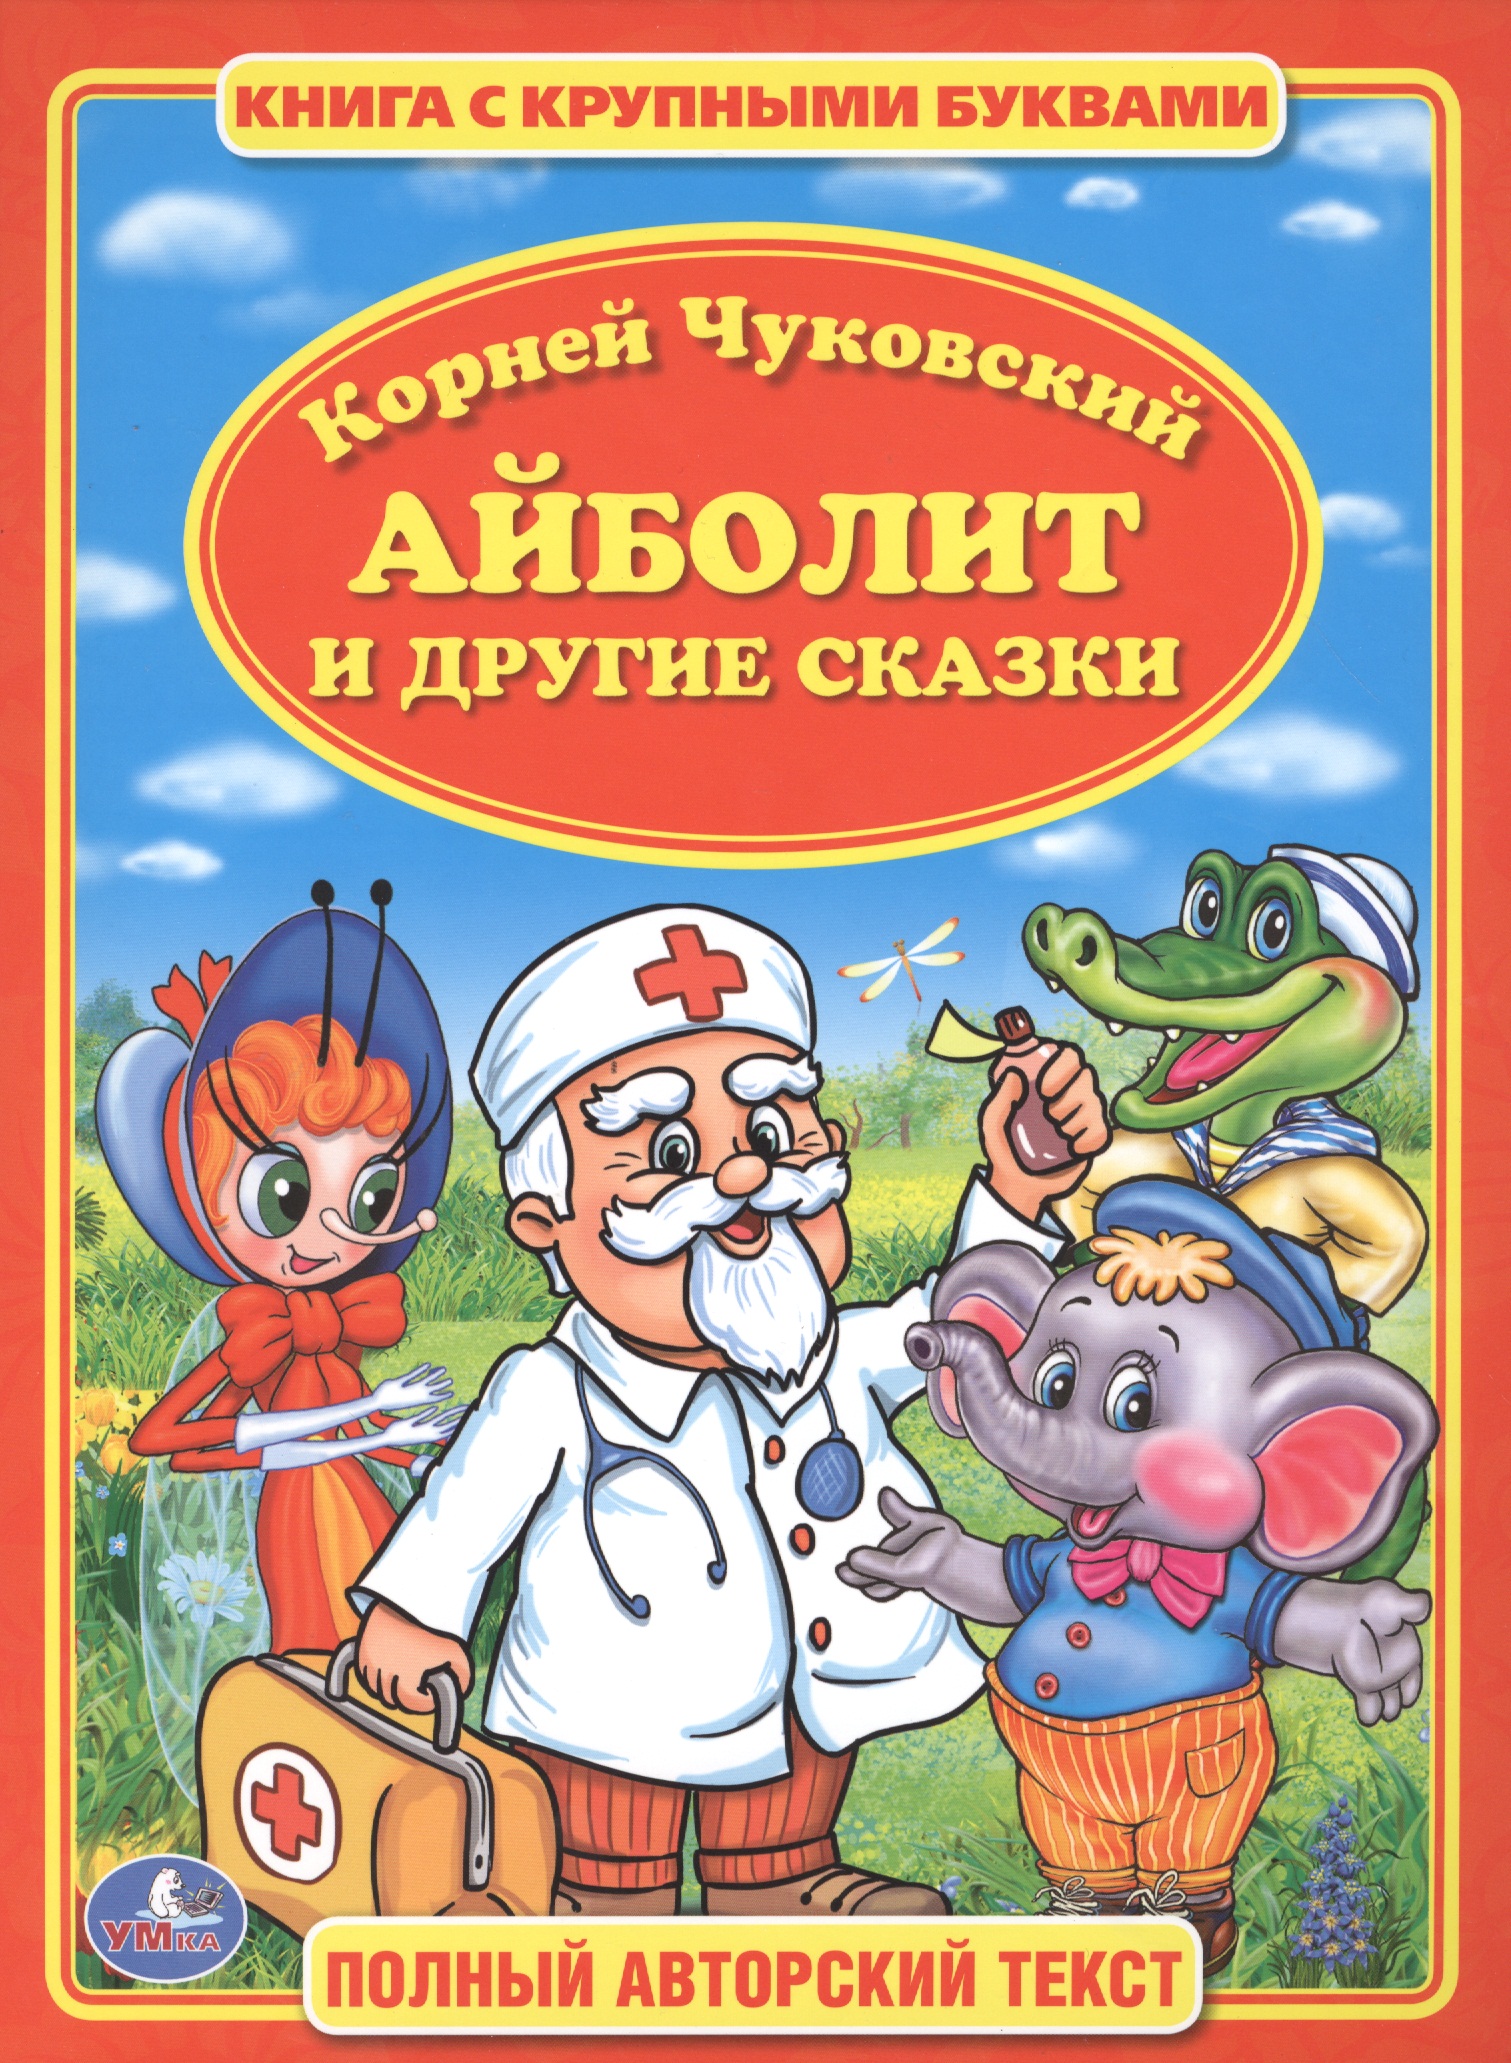 Айболит автор сказки. Обложка книги к.Чуковского Айболит для детей.